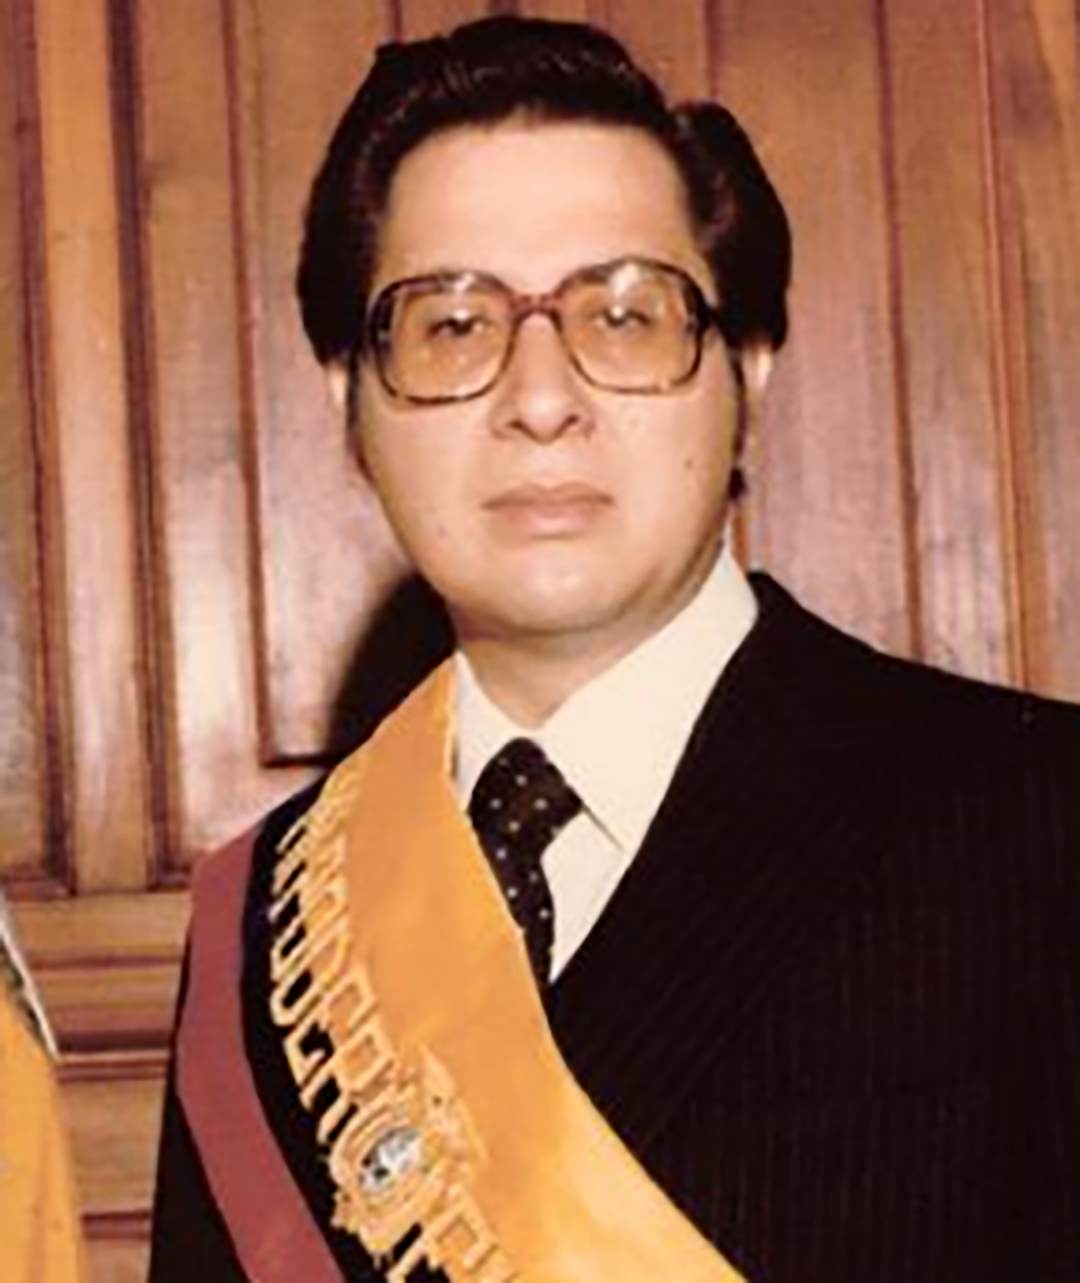 Jaime Roldós Aguilera, adalah presiden Ekuador ketika dia meninggal dalam kecelakaan pesawat pada tahun 1981. (Wikipedia)